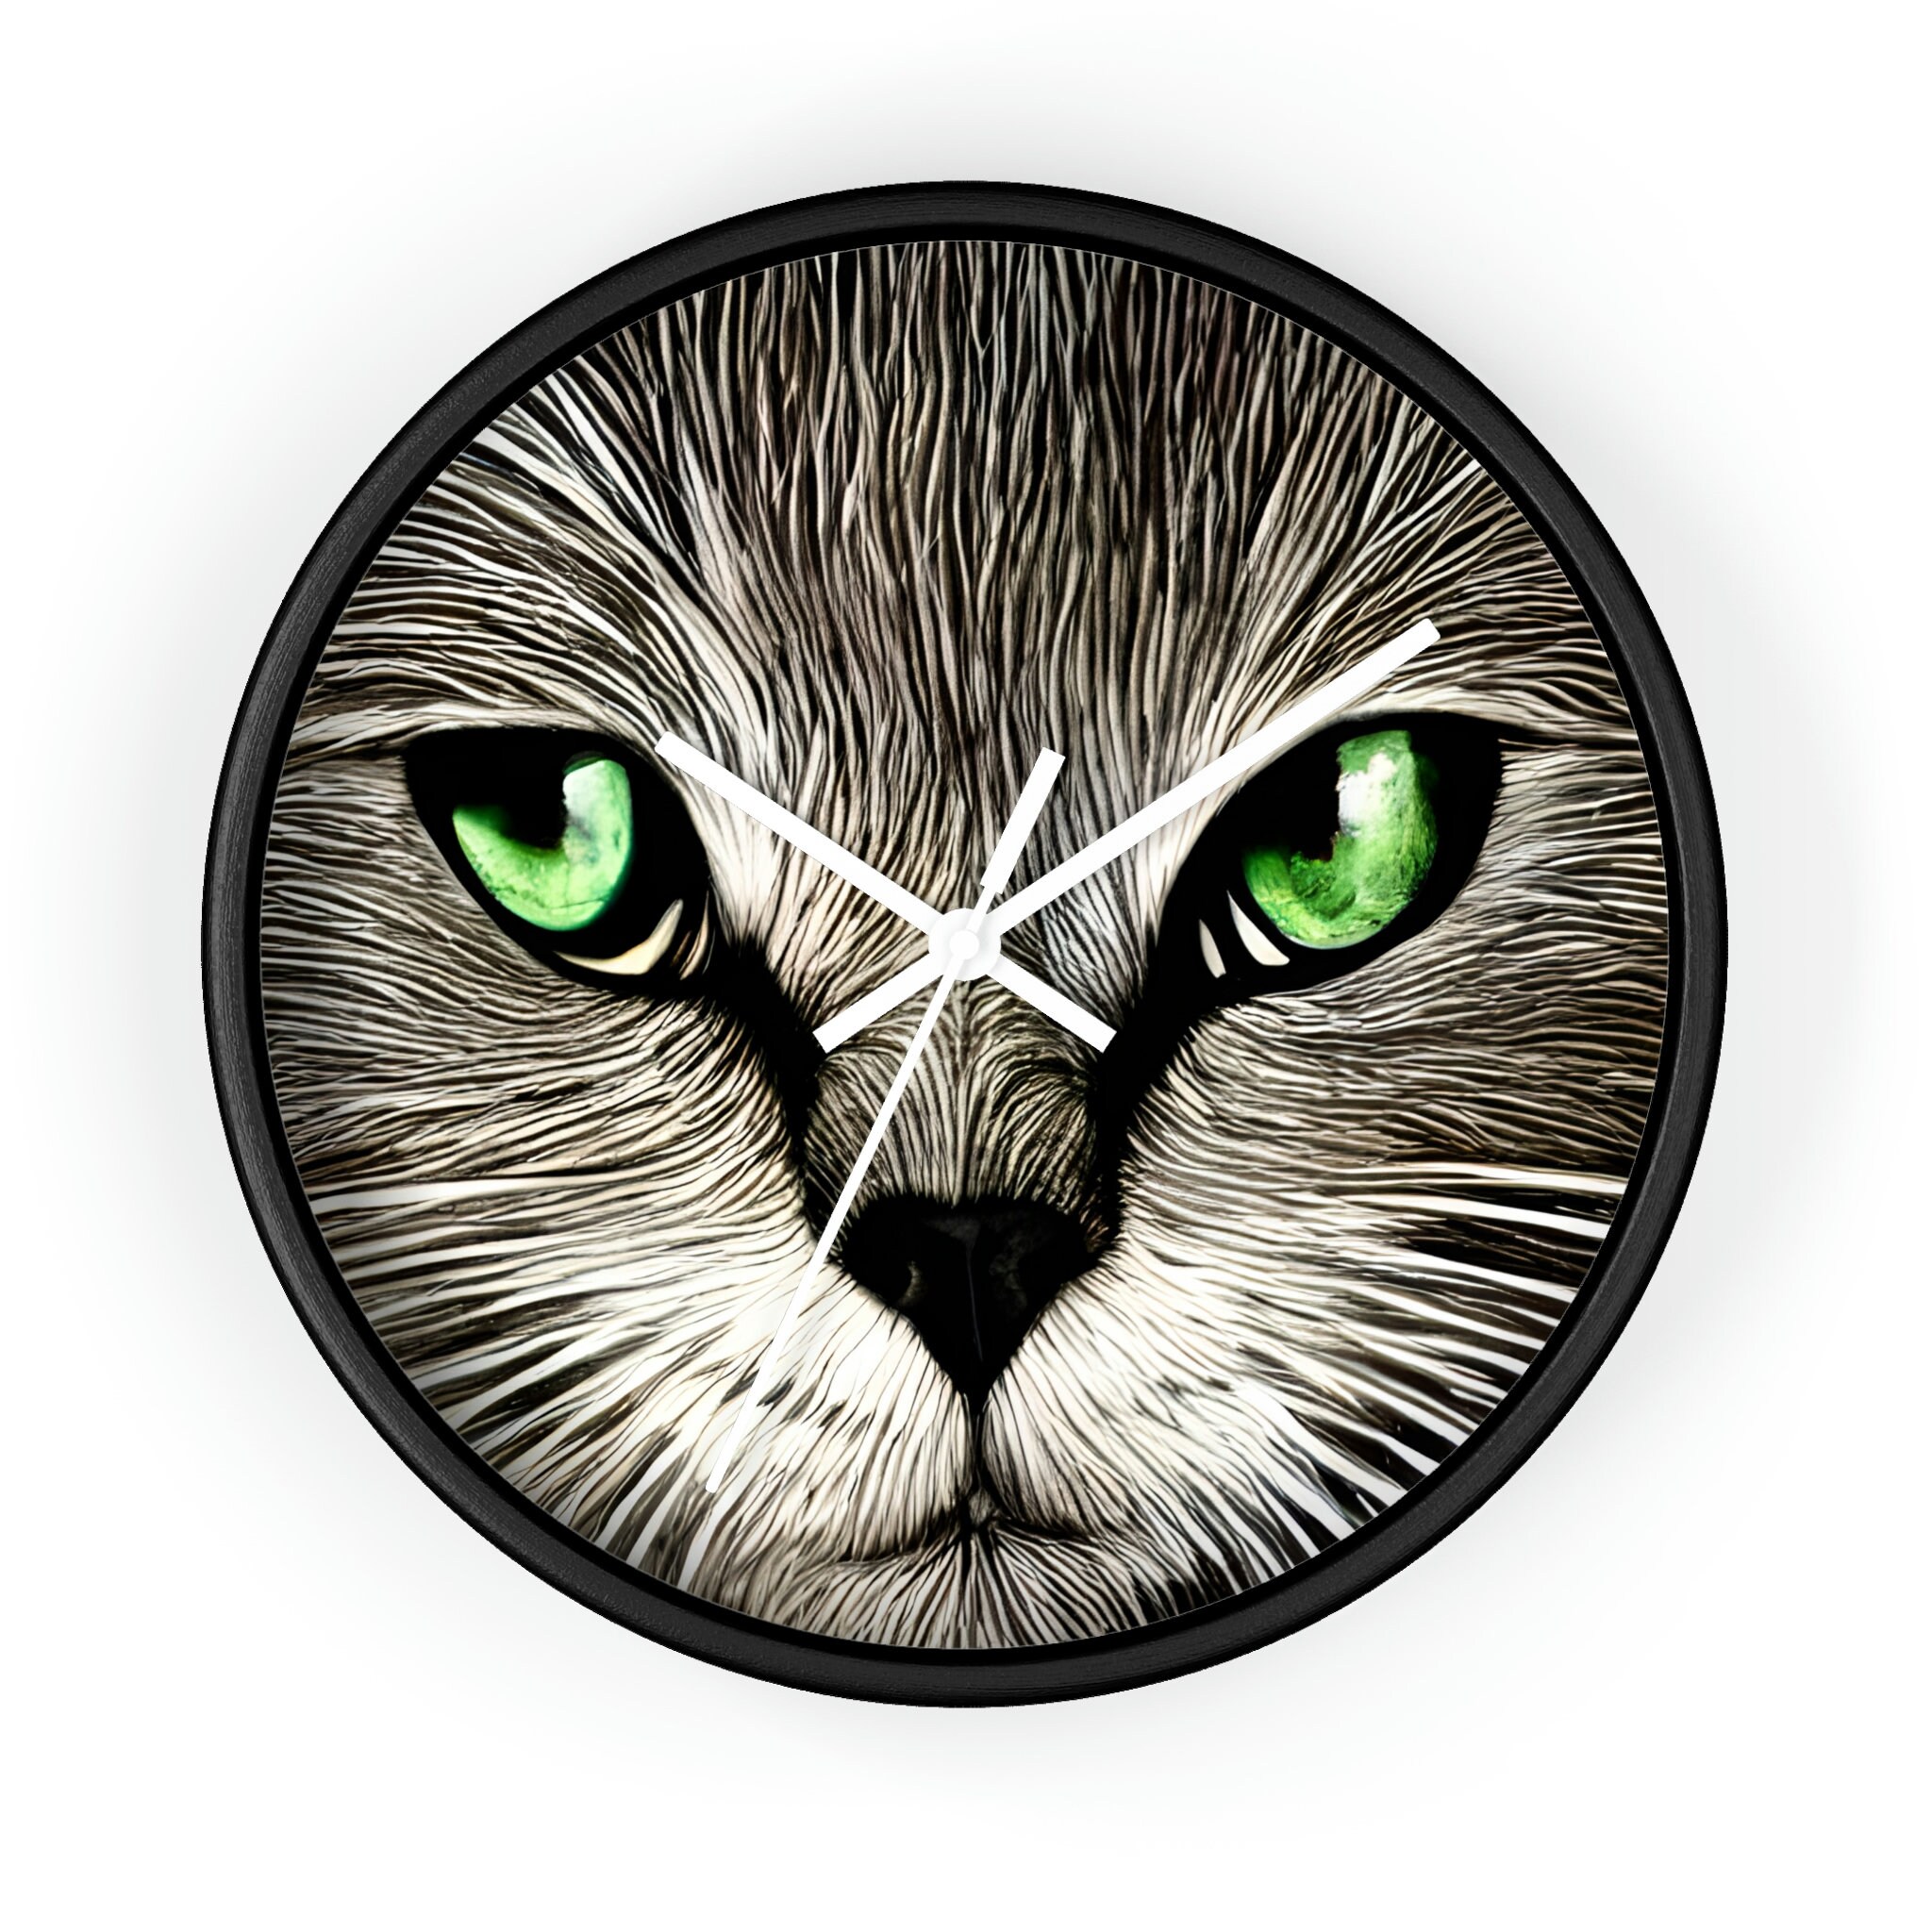 Cat Clock-Green-Eyed Cat Wall Clock